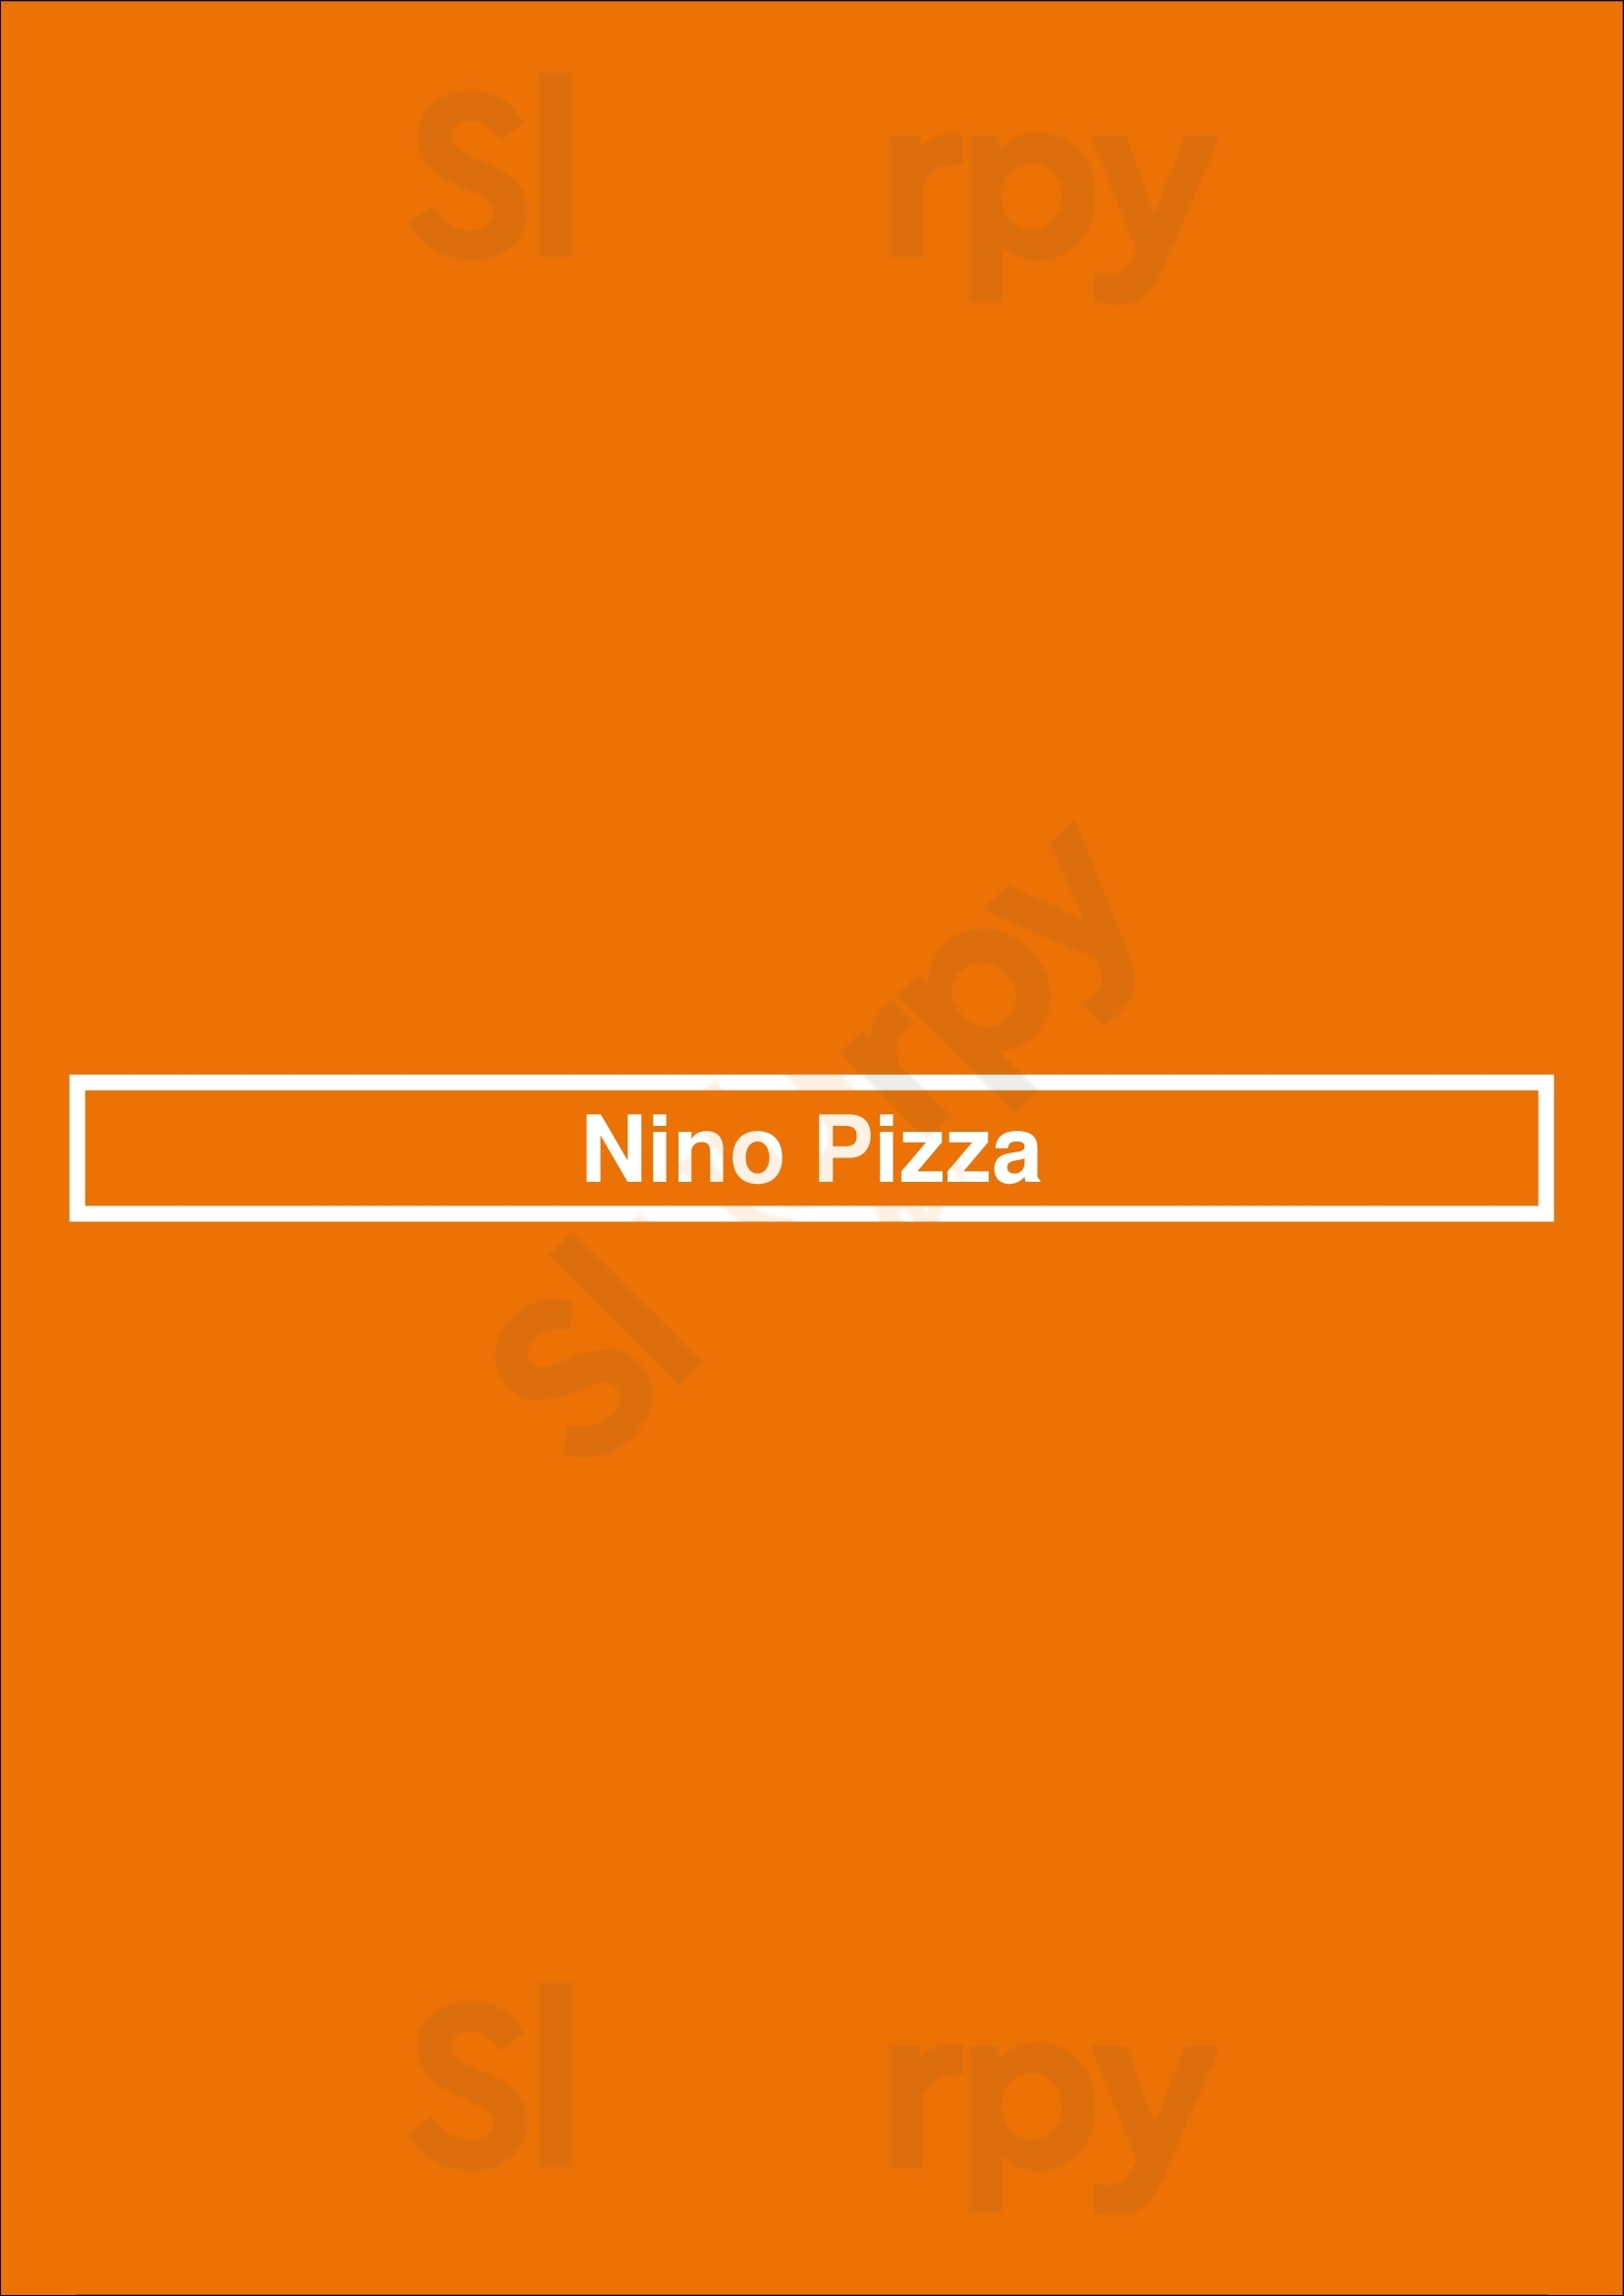 Nino Pizza Paris Menu - 1